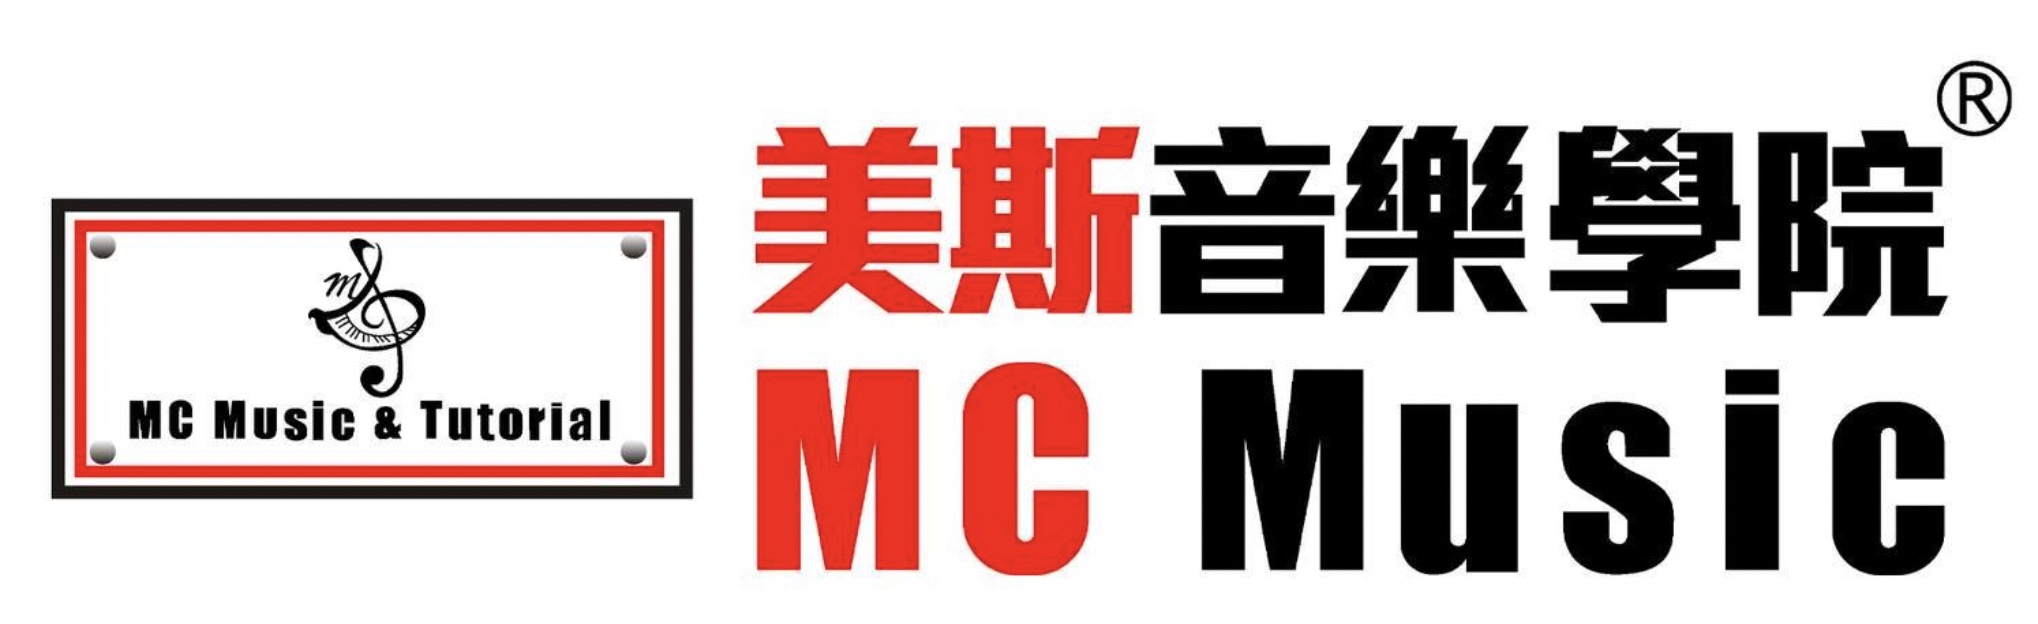 重点客户 - MC Music 美斯音乐 @ Compbrother Ltd 脑爸打有限公司